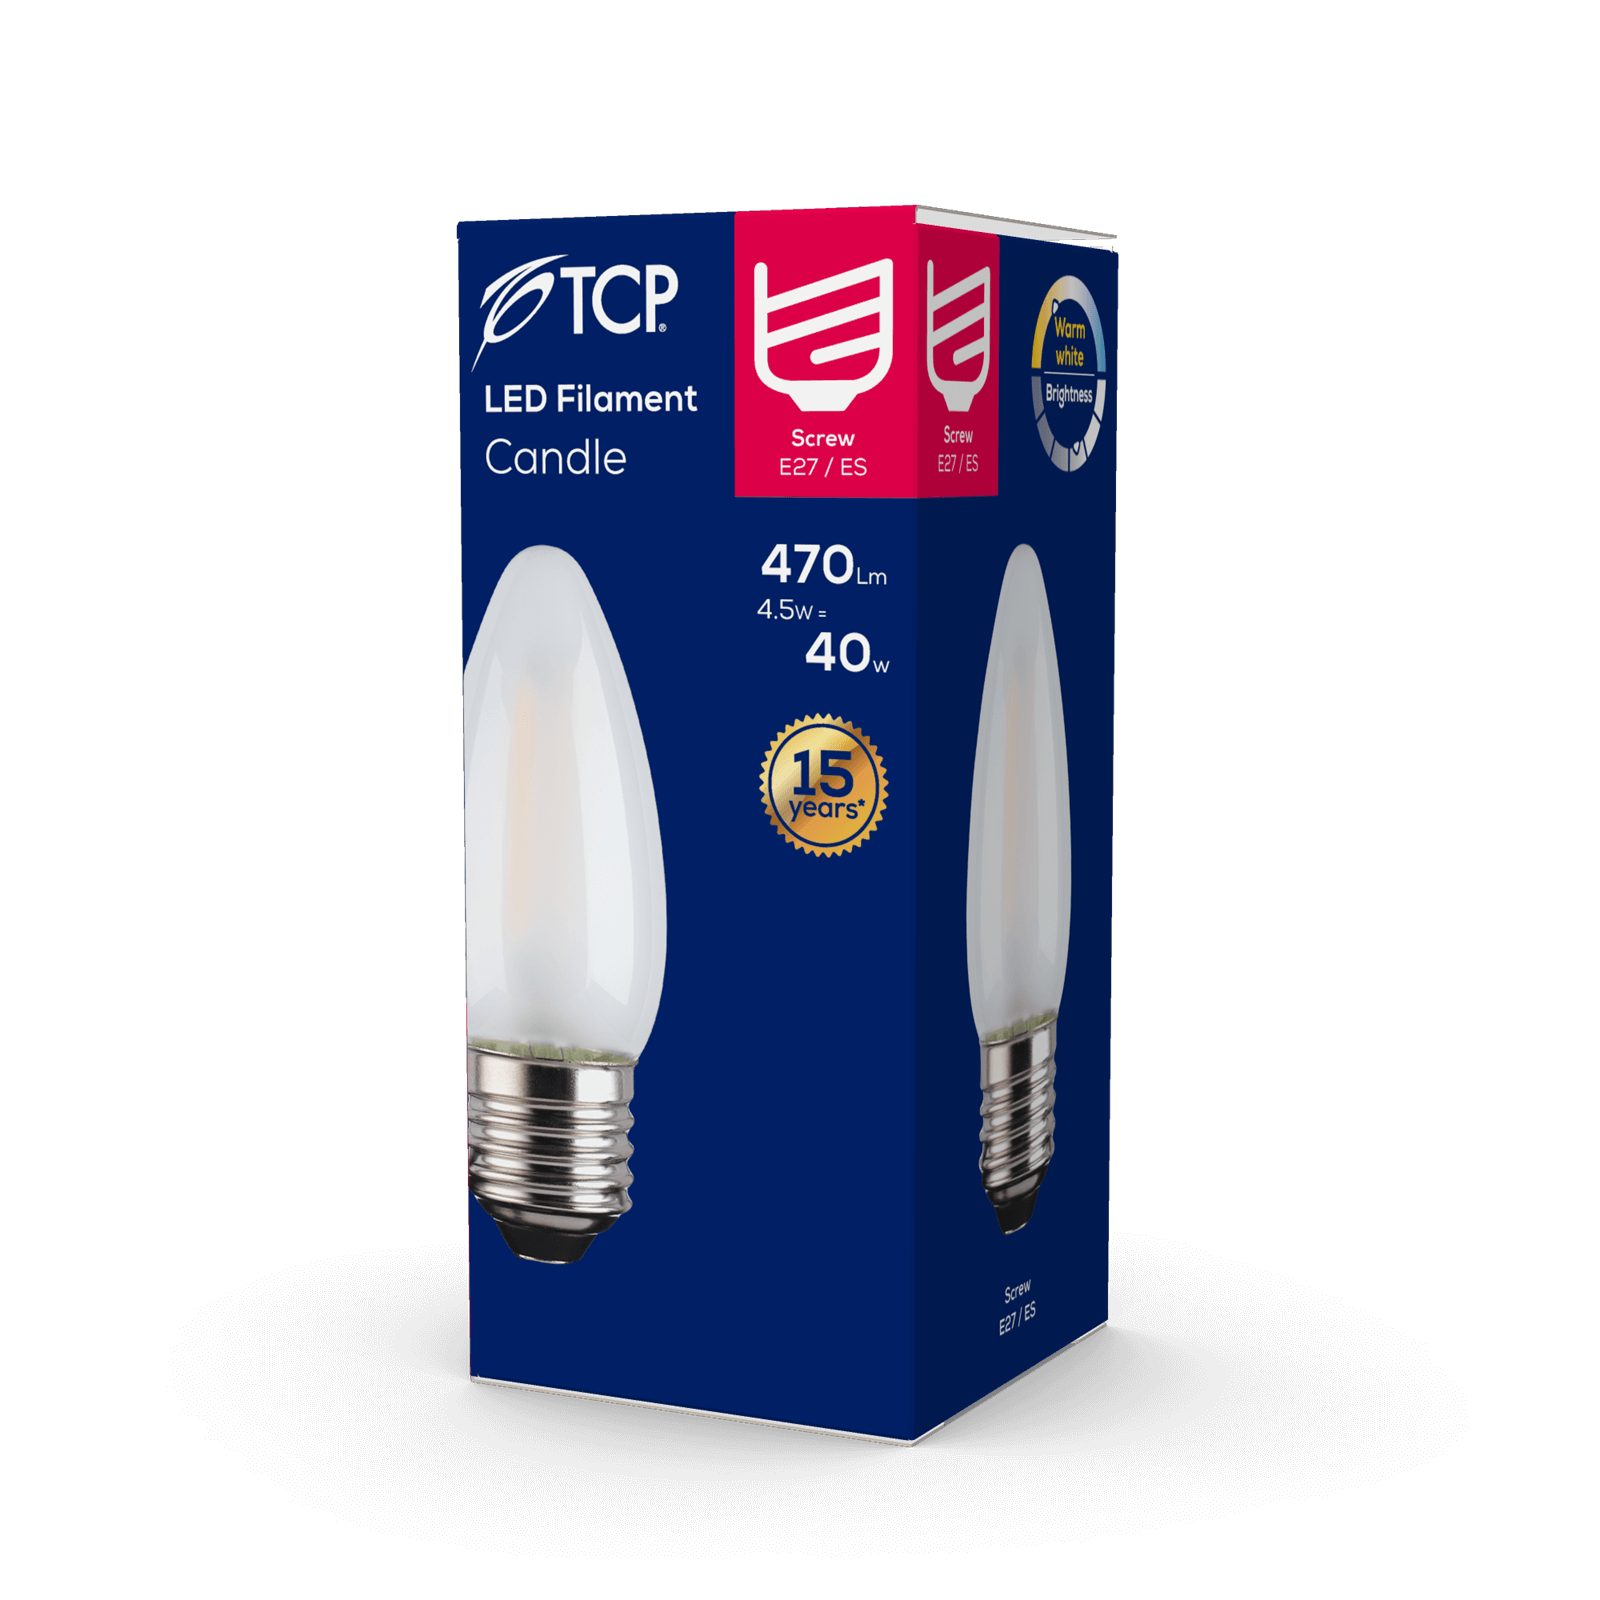 TCP Filament Candle Coat 40W ES Warm Light Bulb